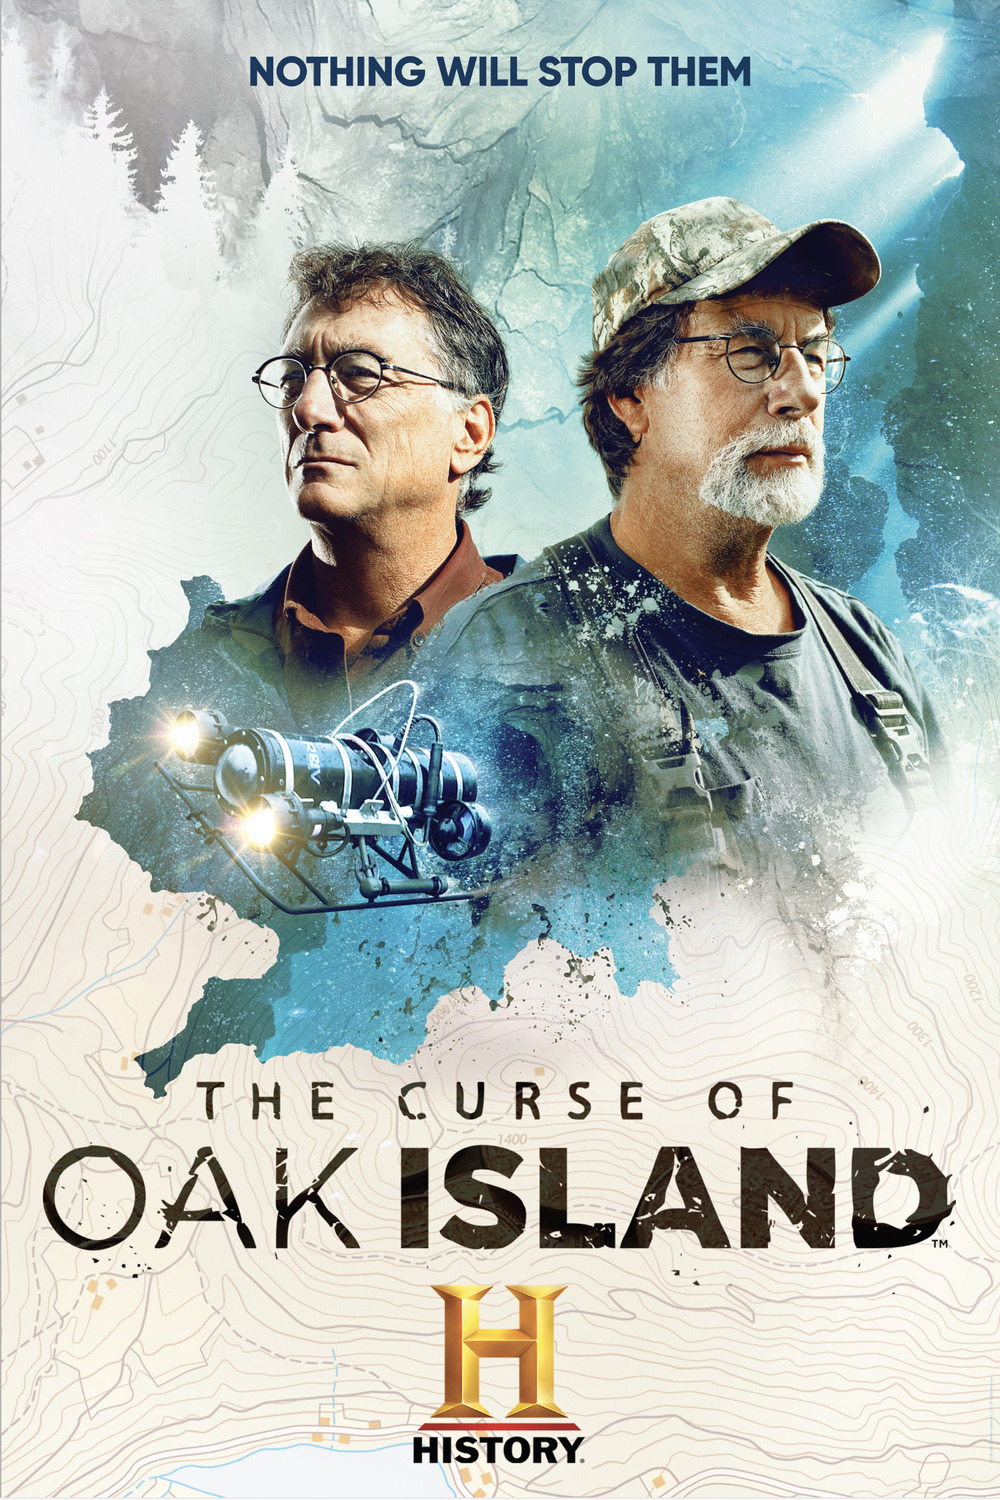 The Curse Of Oak Island S11E09 [1080p/720p] (x265) C88b1126edead8d45264612ebb47703b